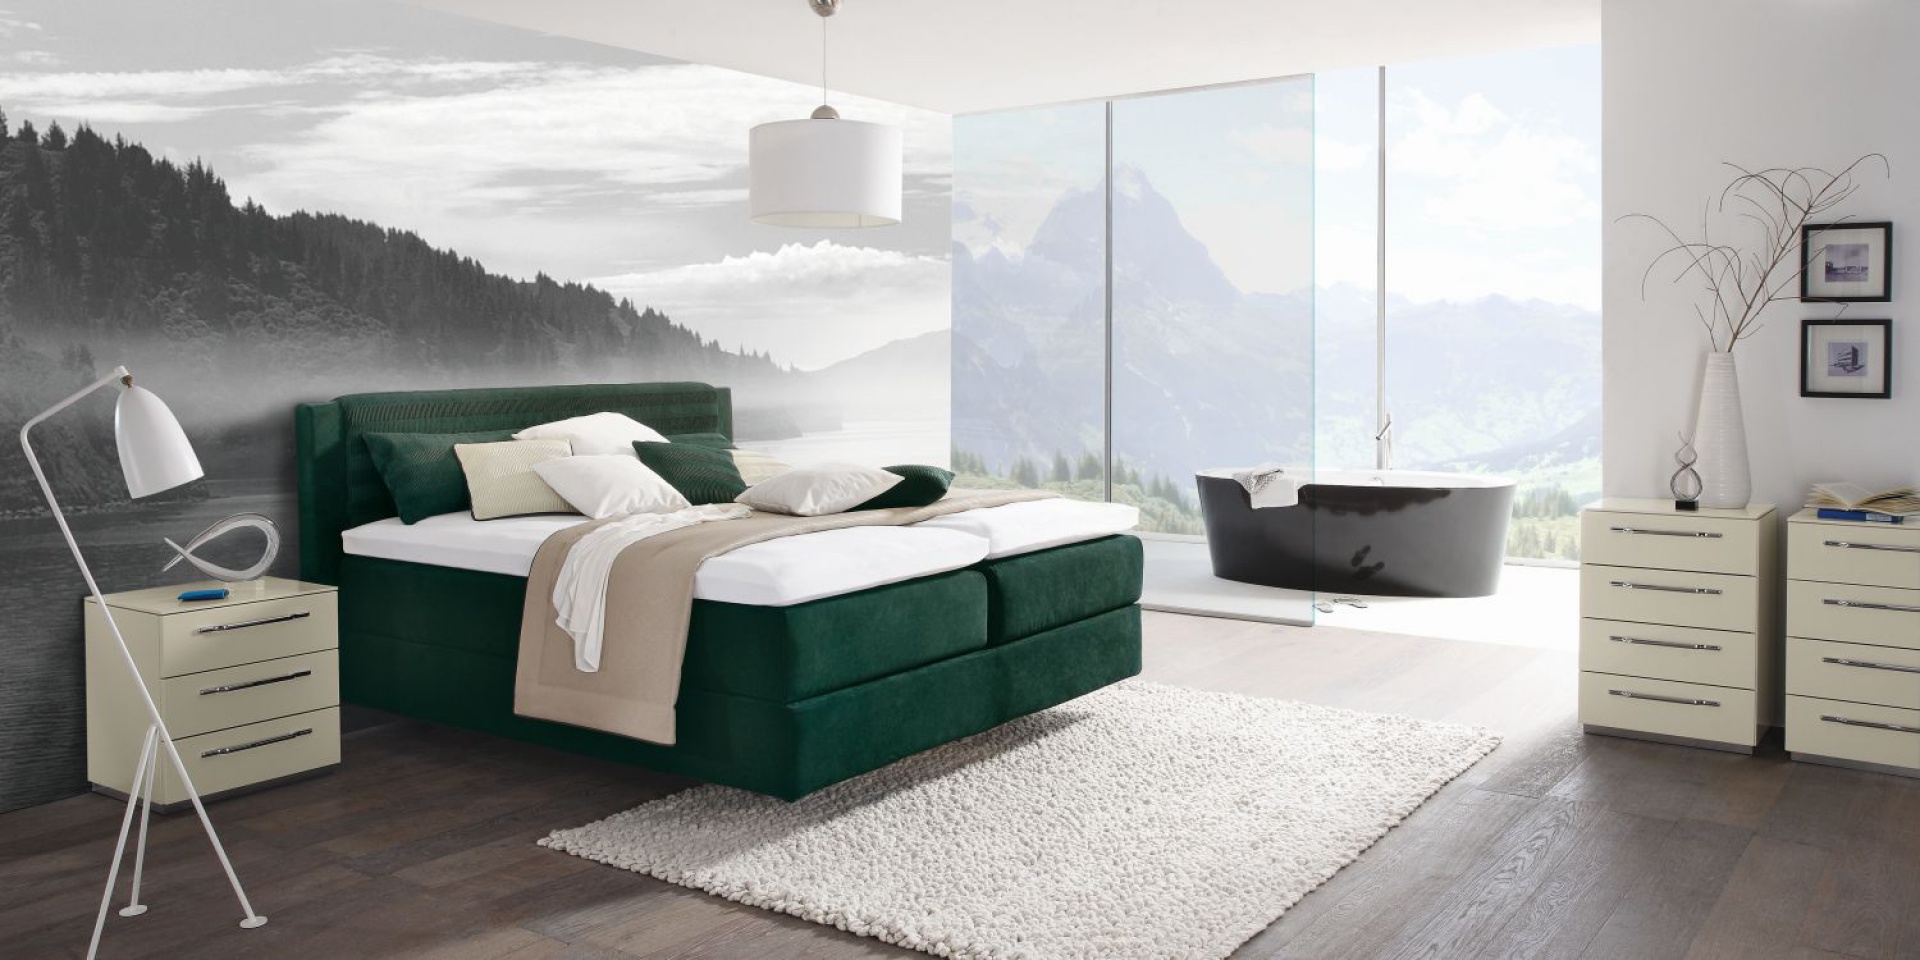 Pochodzące z nowej kolekcji Design Collection tapicerowane łóżko ma piękny, soczyście zielony kolor. Fot. Huelsta 